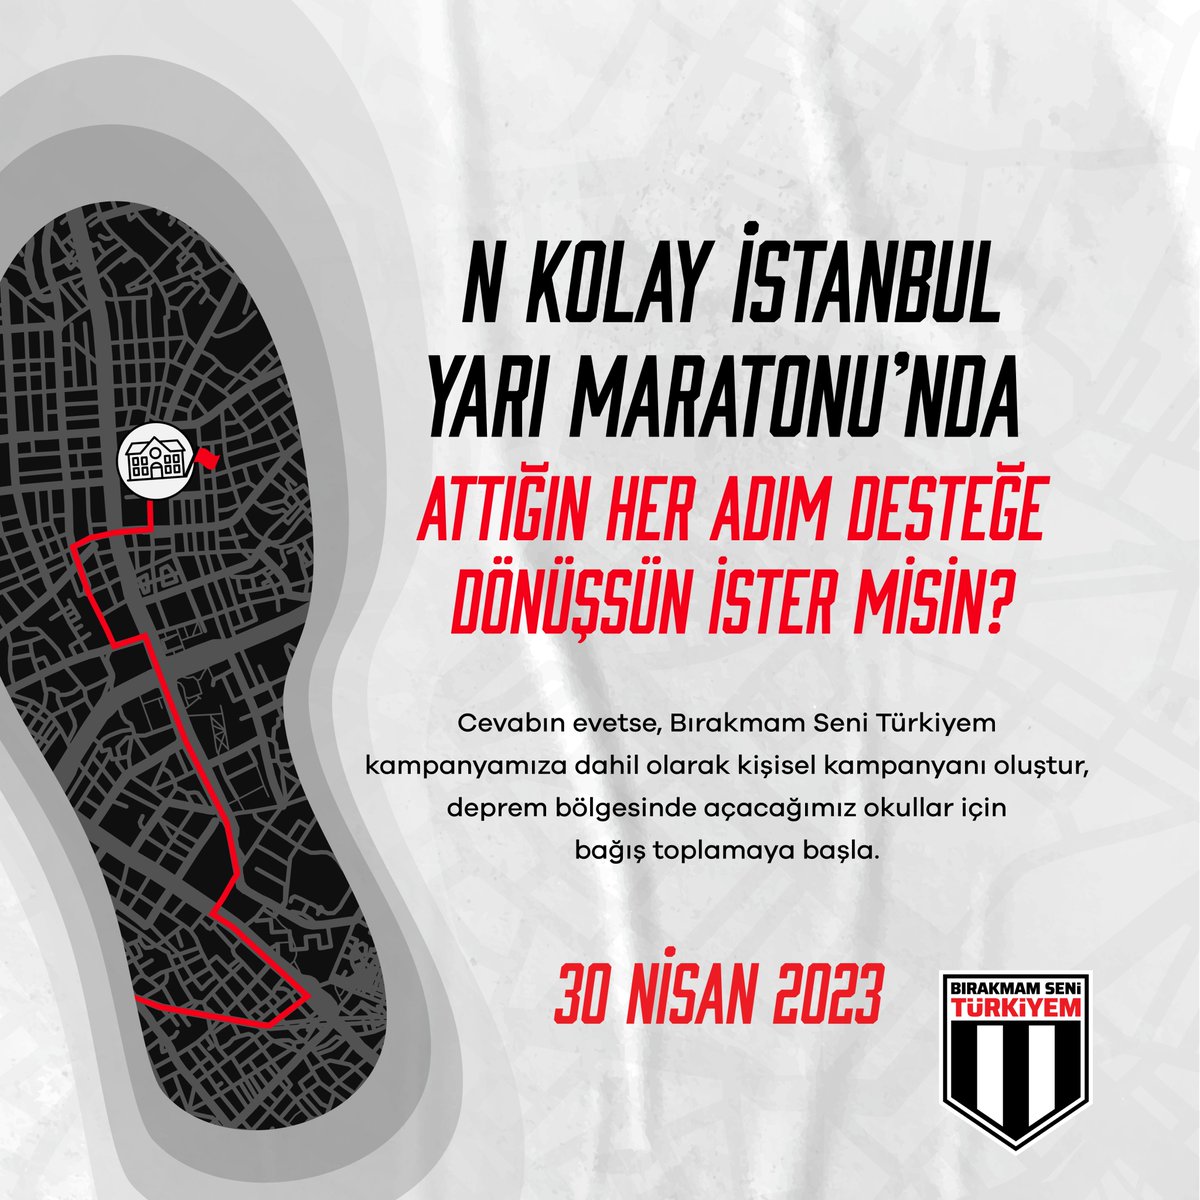 N Kolay İstanbul Yarı Maratonu'nda attığın her adım desteğe dönüşsün büyük Beşiktaş taraftarı! Bırakmam Seni Türkiyem kampanyamıza dahil olup kişisel kampanyanı oluştur, deprem bölgesinde açacağımız okullar için bağış toplamaya başla. Bilgi için: fonzip.com/bjk/kampanya